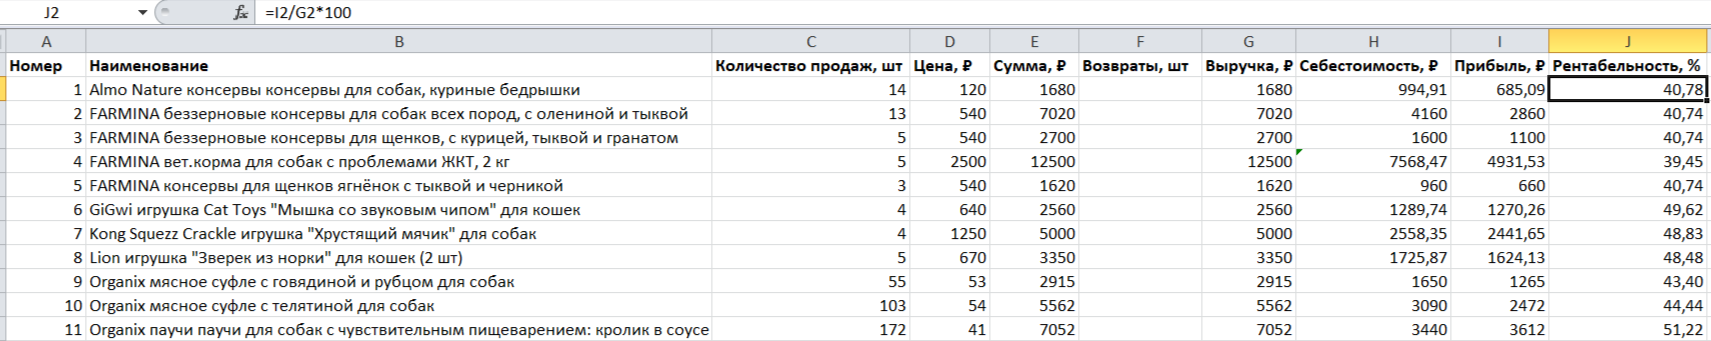 Расчет рентабельности в Excel